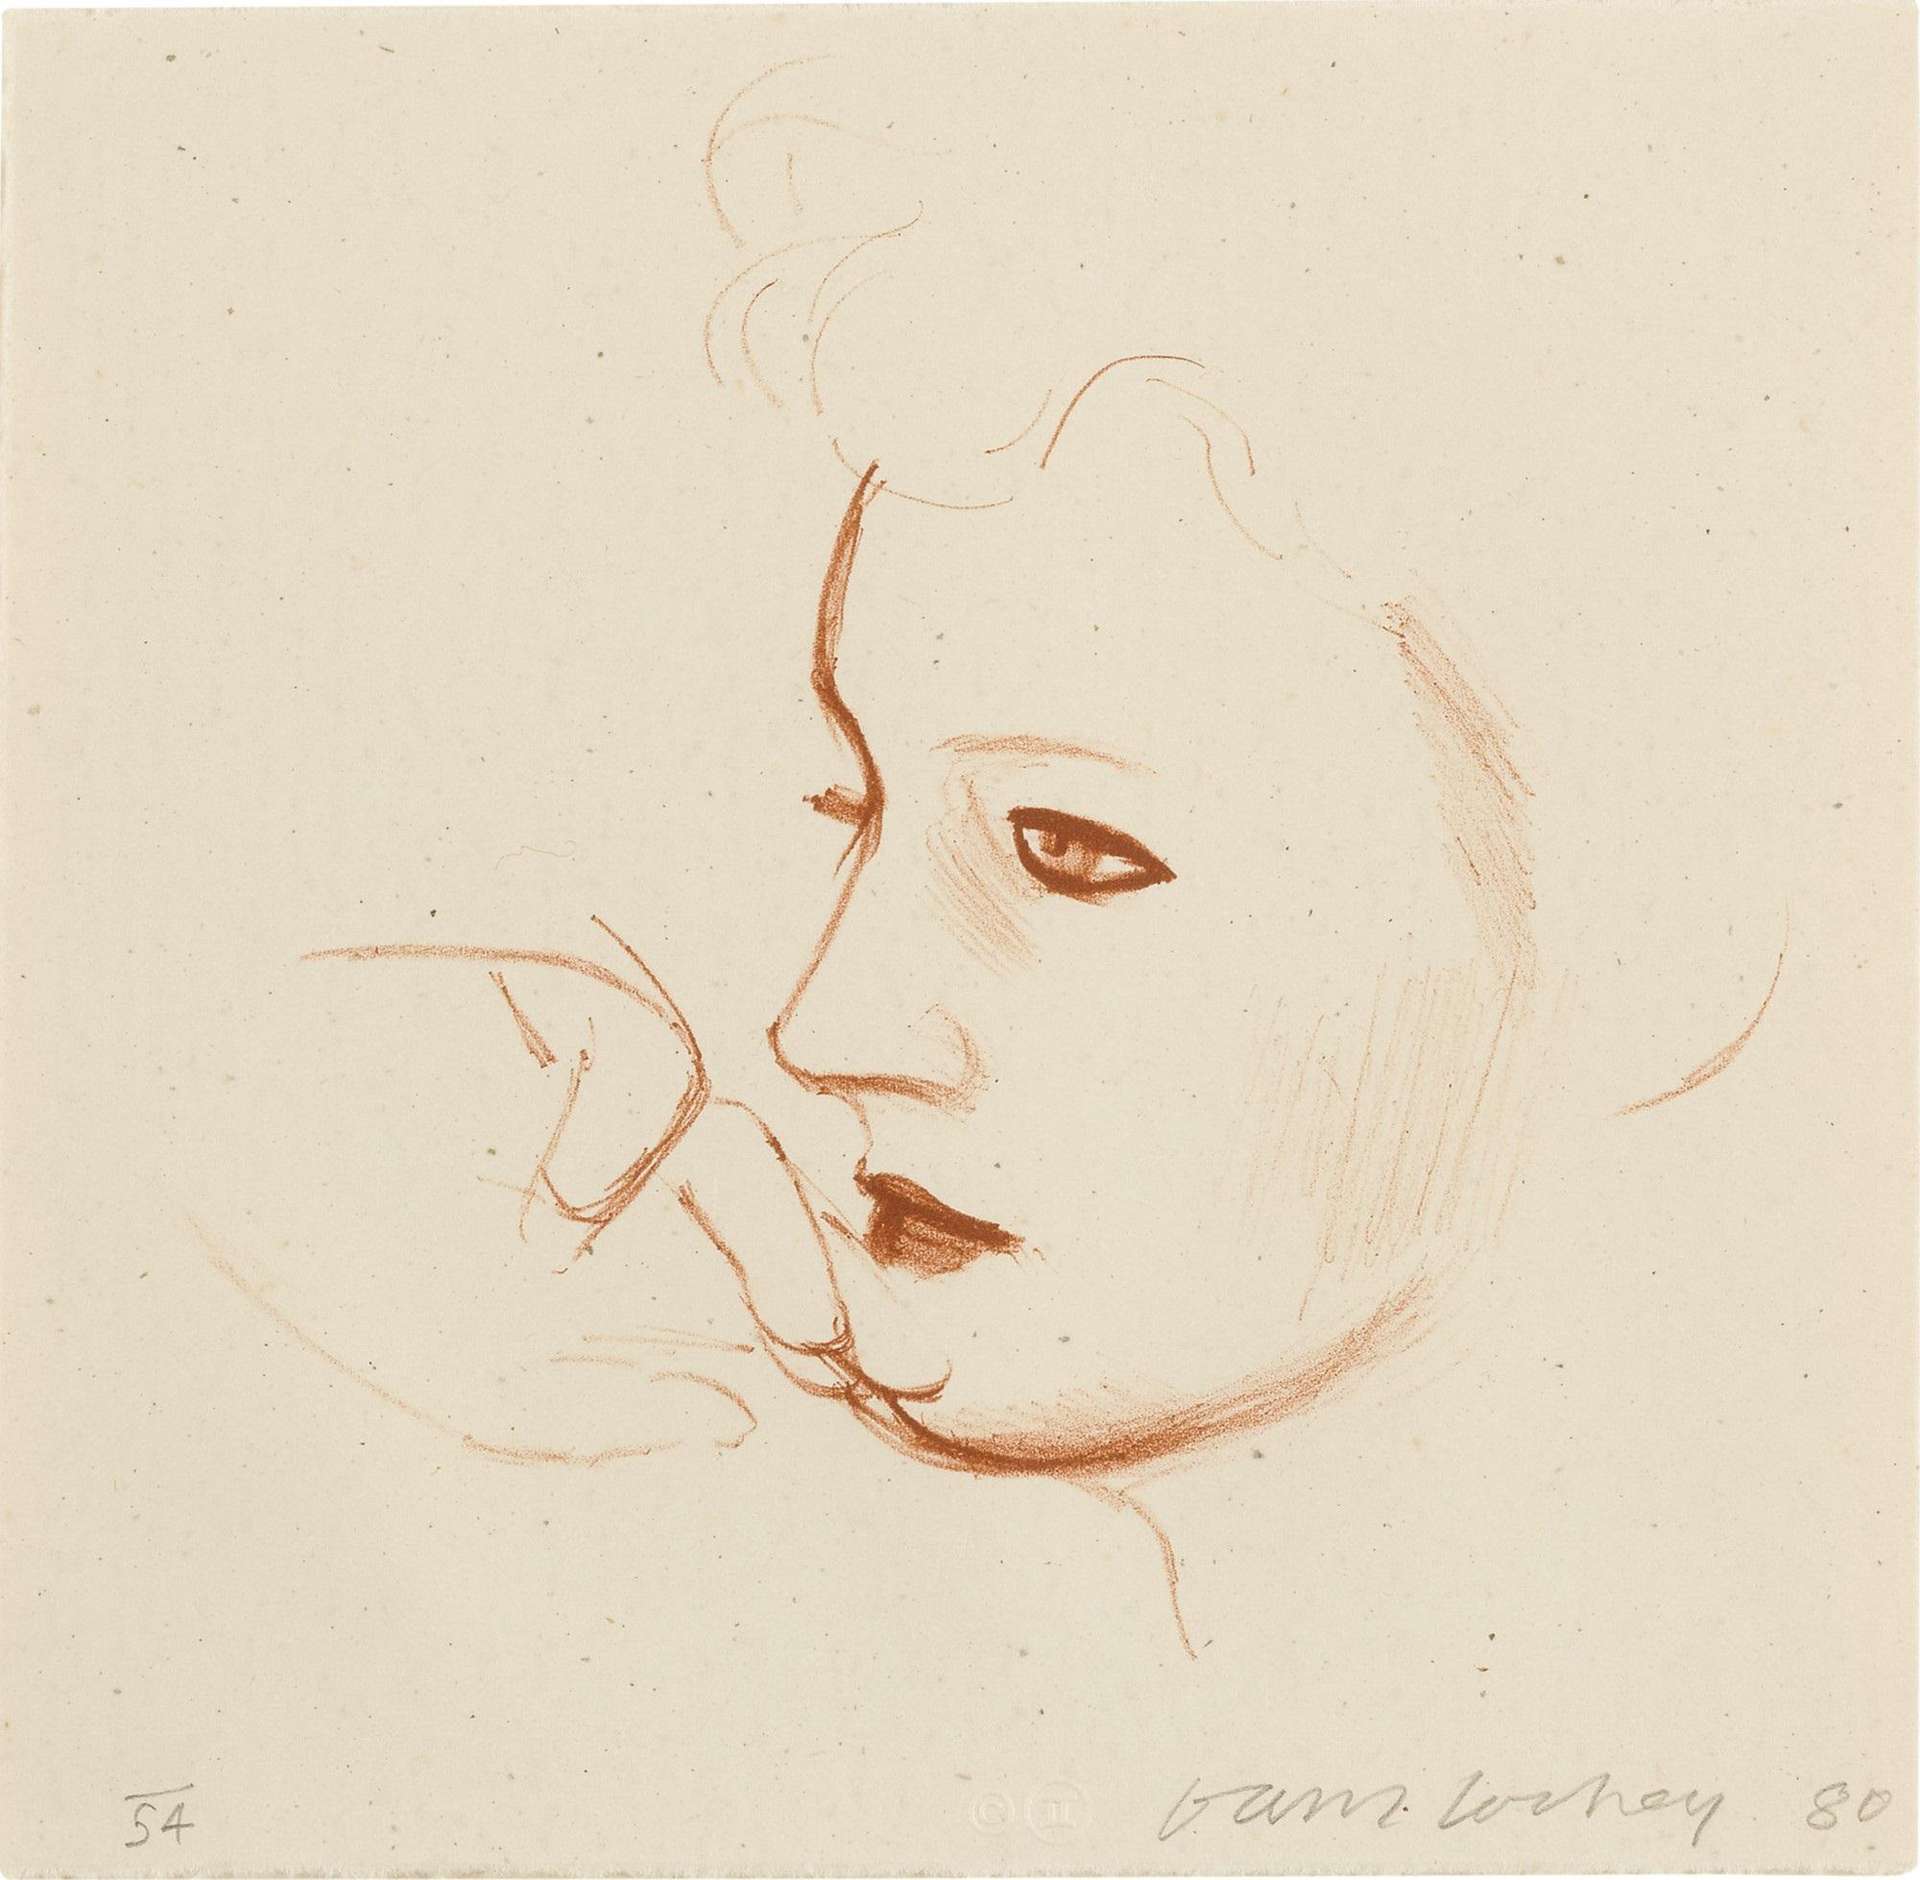 David Hockney: Celia Looks - Signed Print